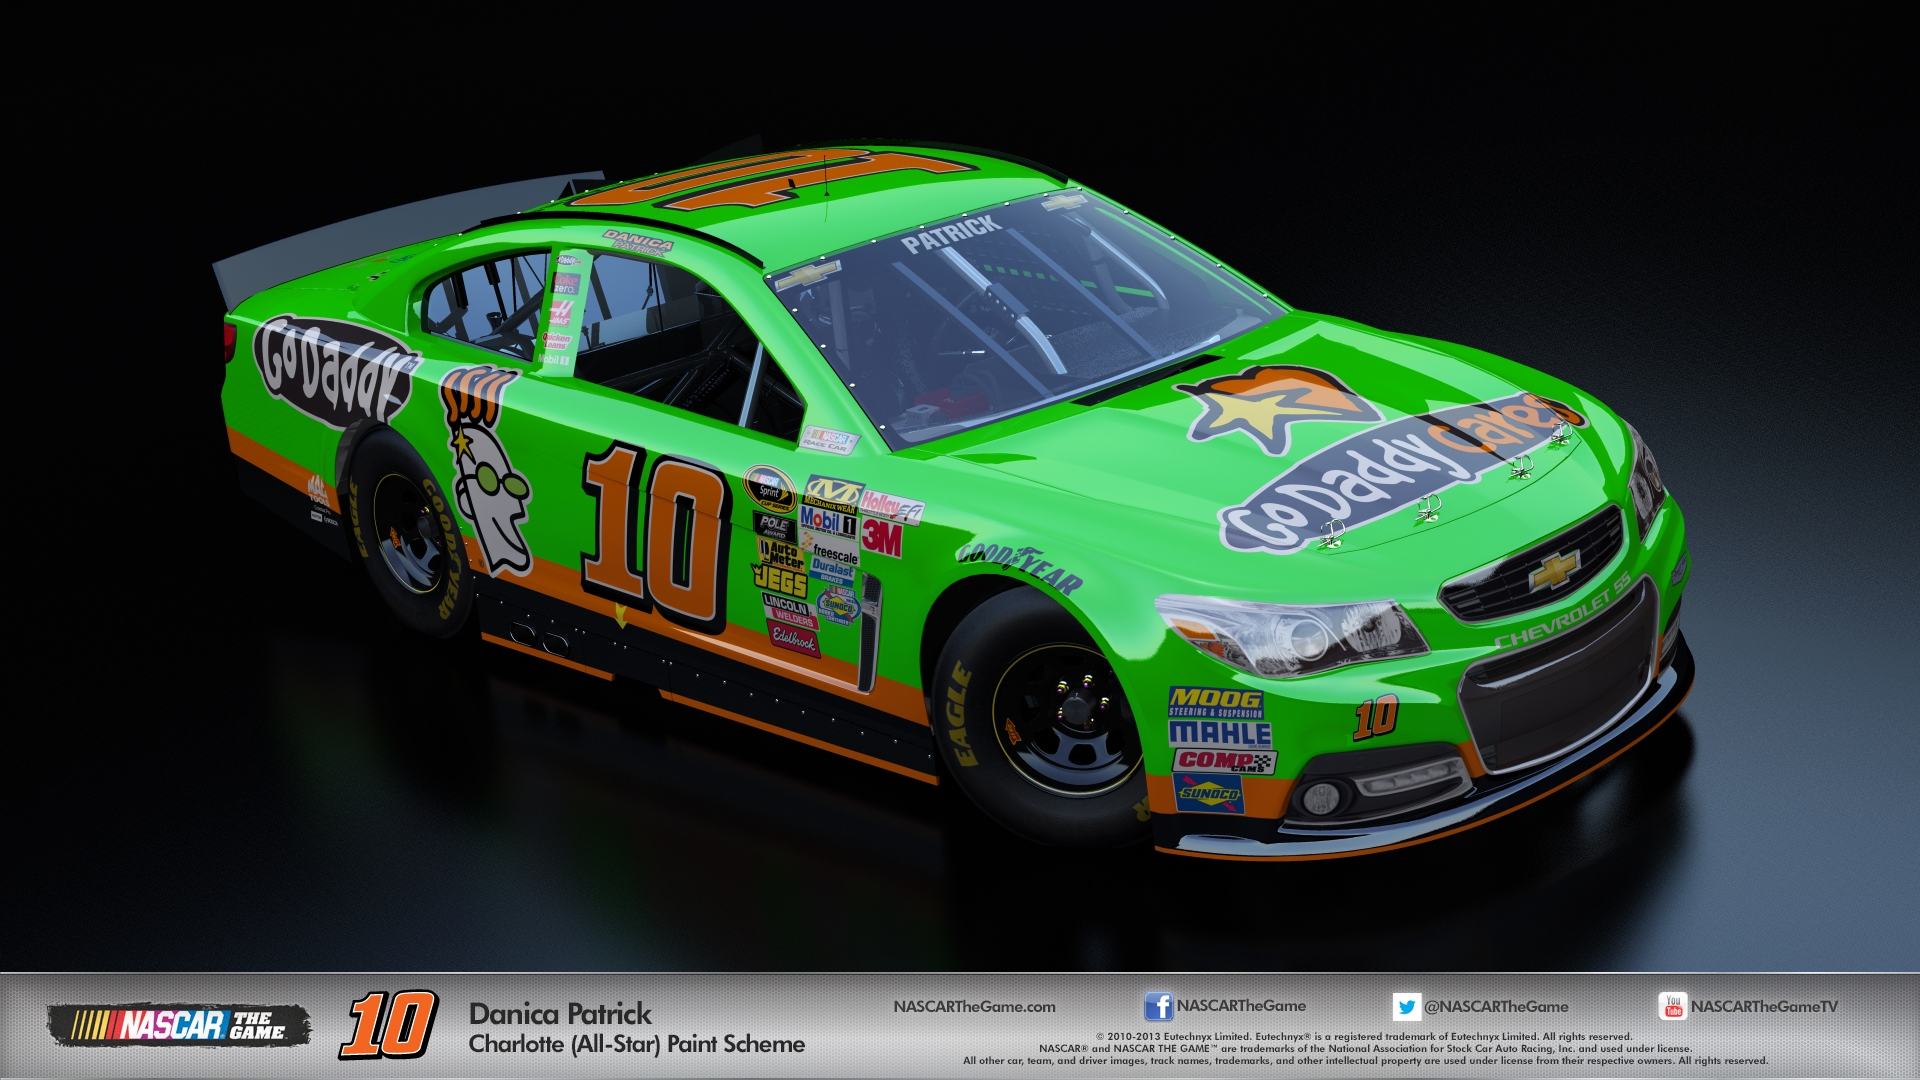 Скриншот из игры NASCAR: The Game 2013 под номером 19